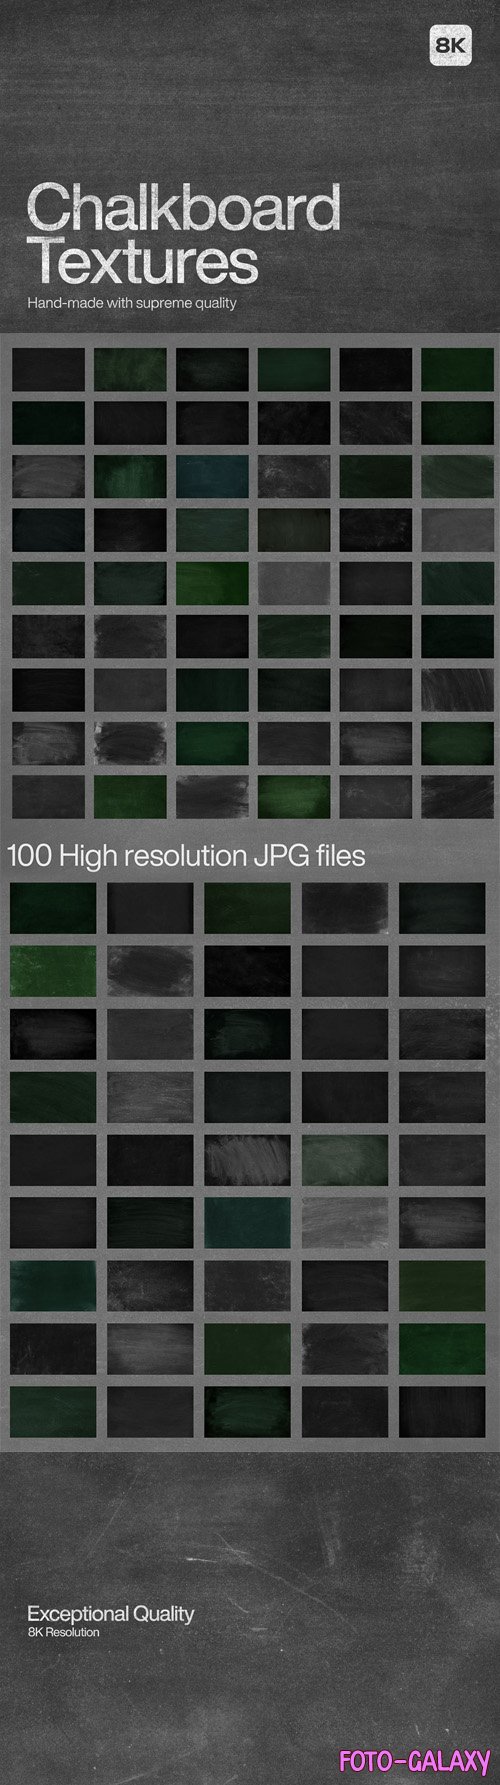 100 Chalkboard Textures [8K]